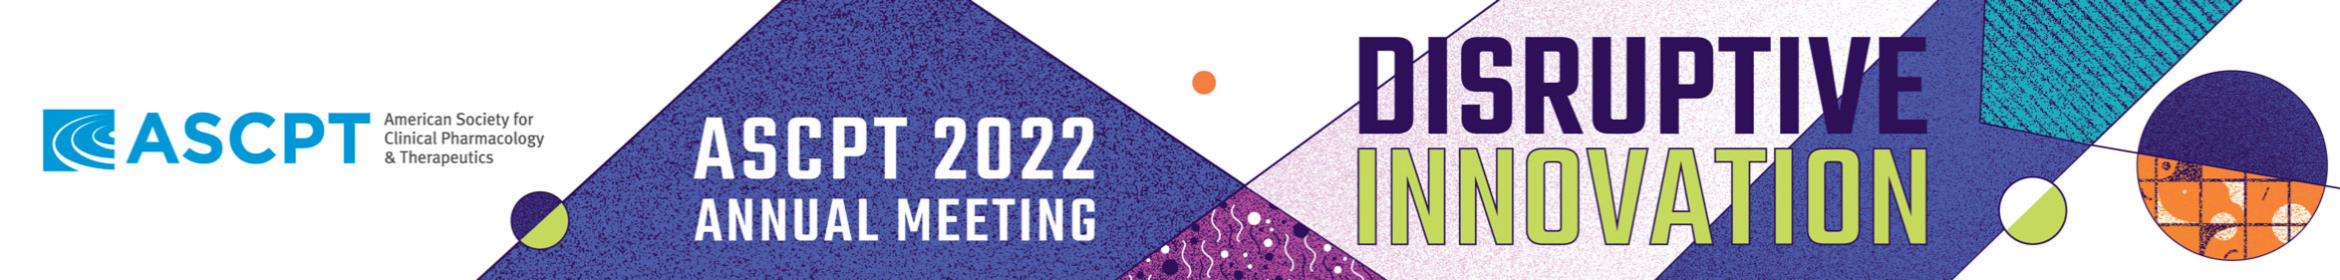 ASCPT 2022 Annual Meeting Main banner